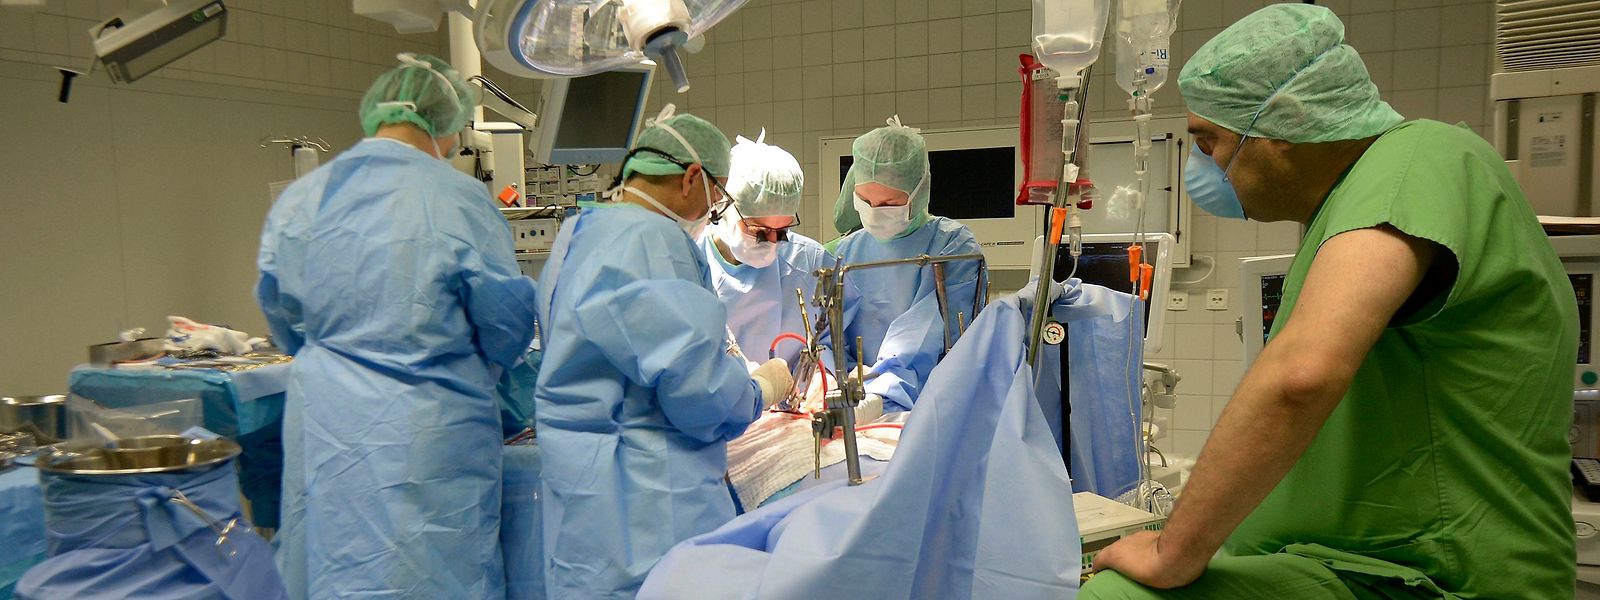 Les urgences chirurgicales, elles, sont maintenues dans l'activité hospitalière.